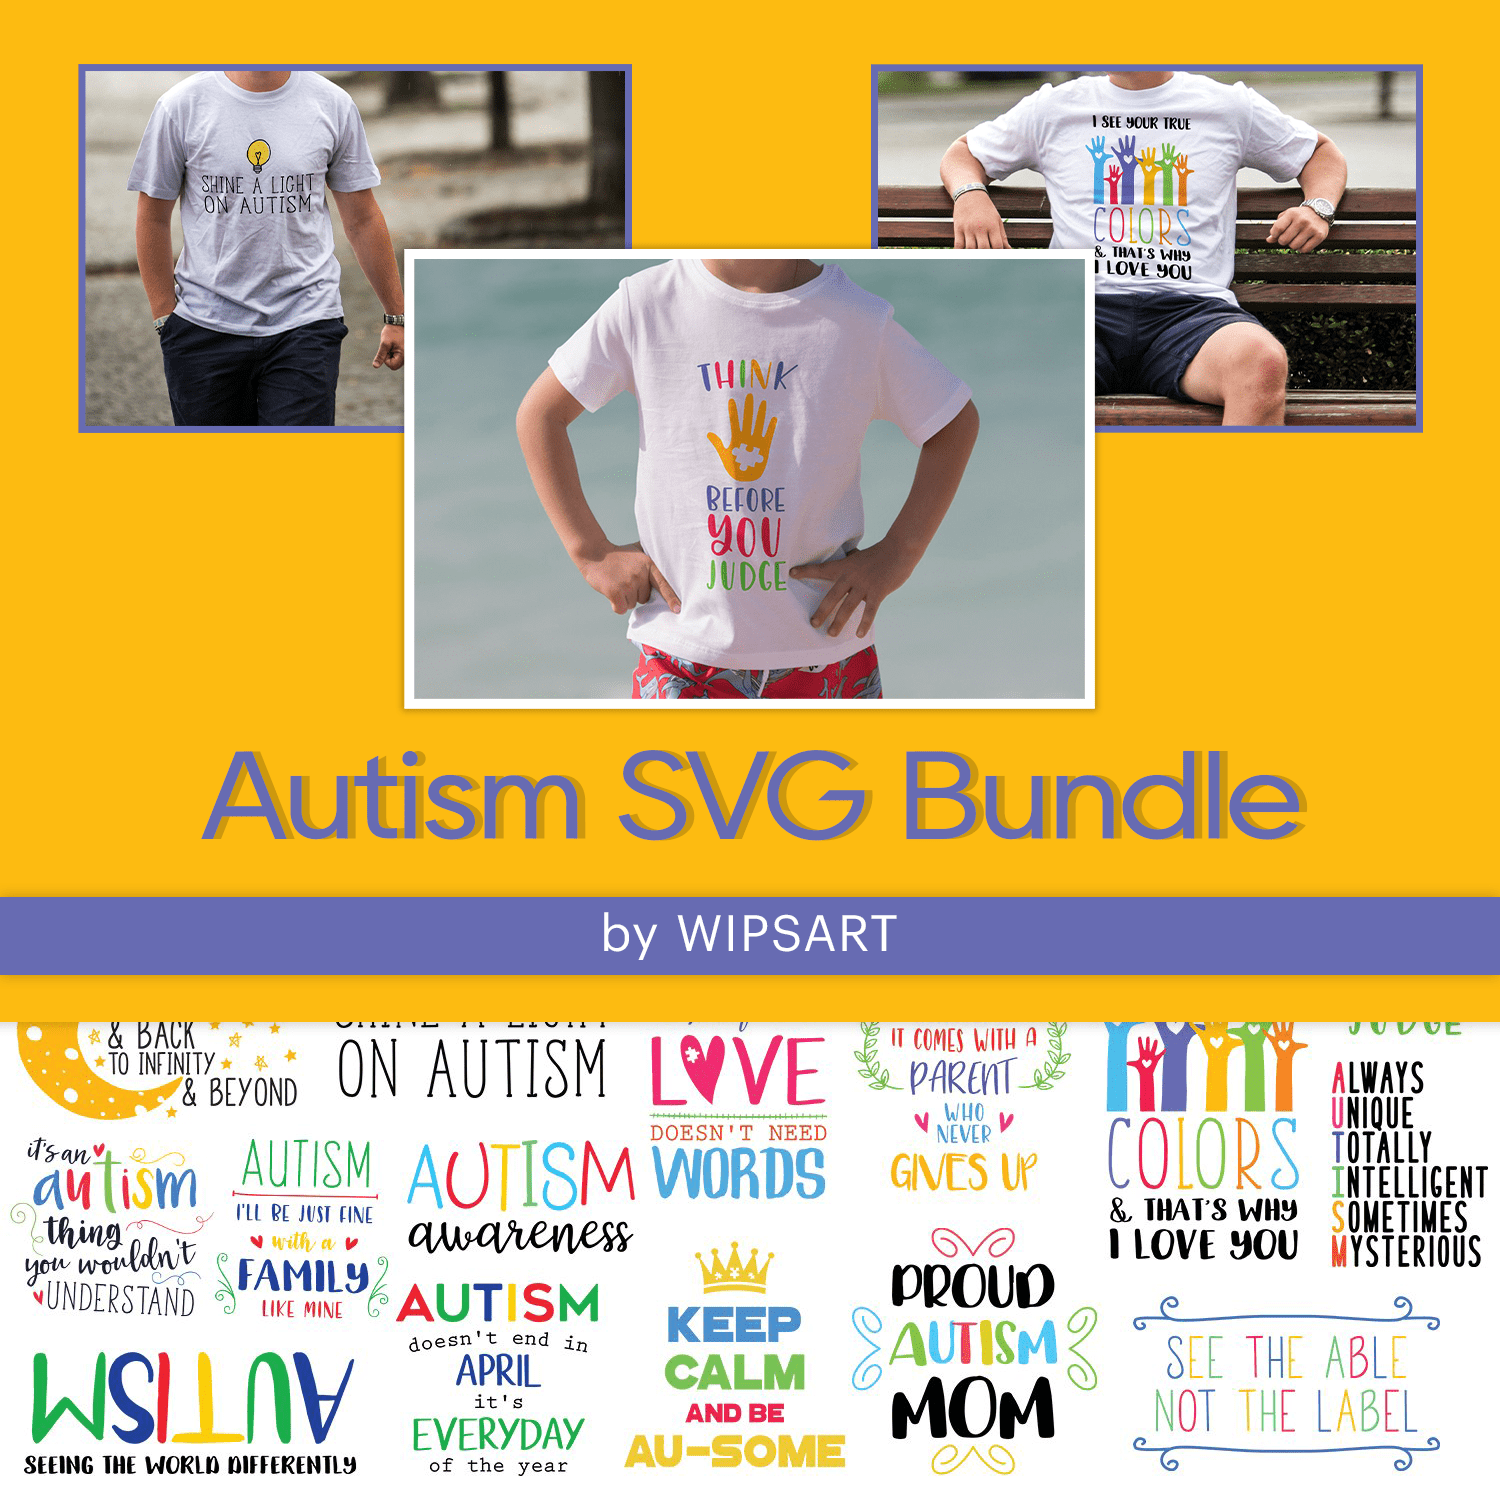 Autism SVG Bundle, Autism Quotes SVG cover.